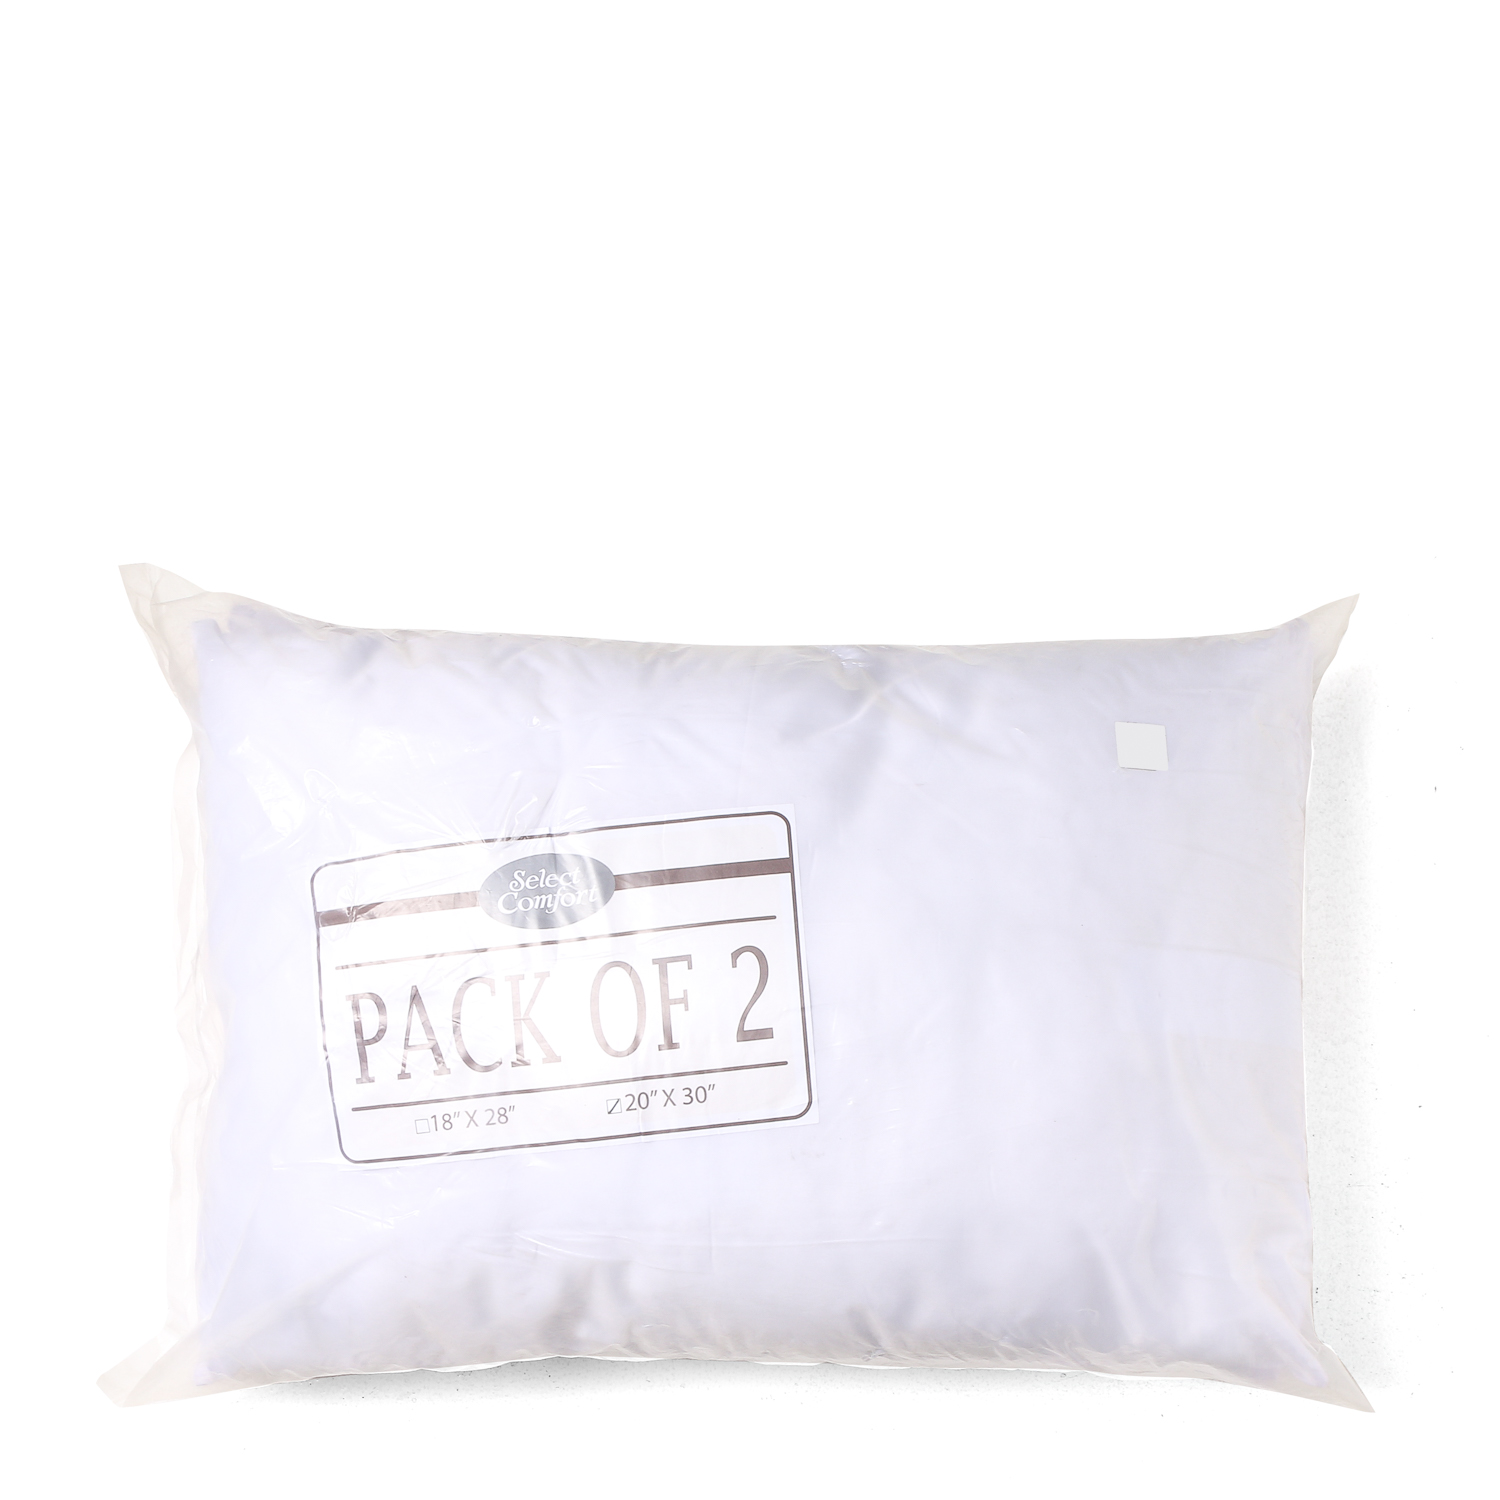 pillows online